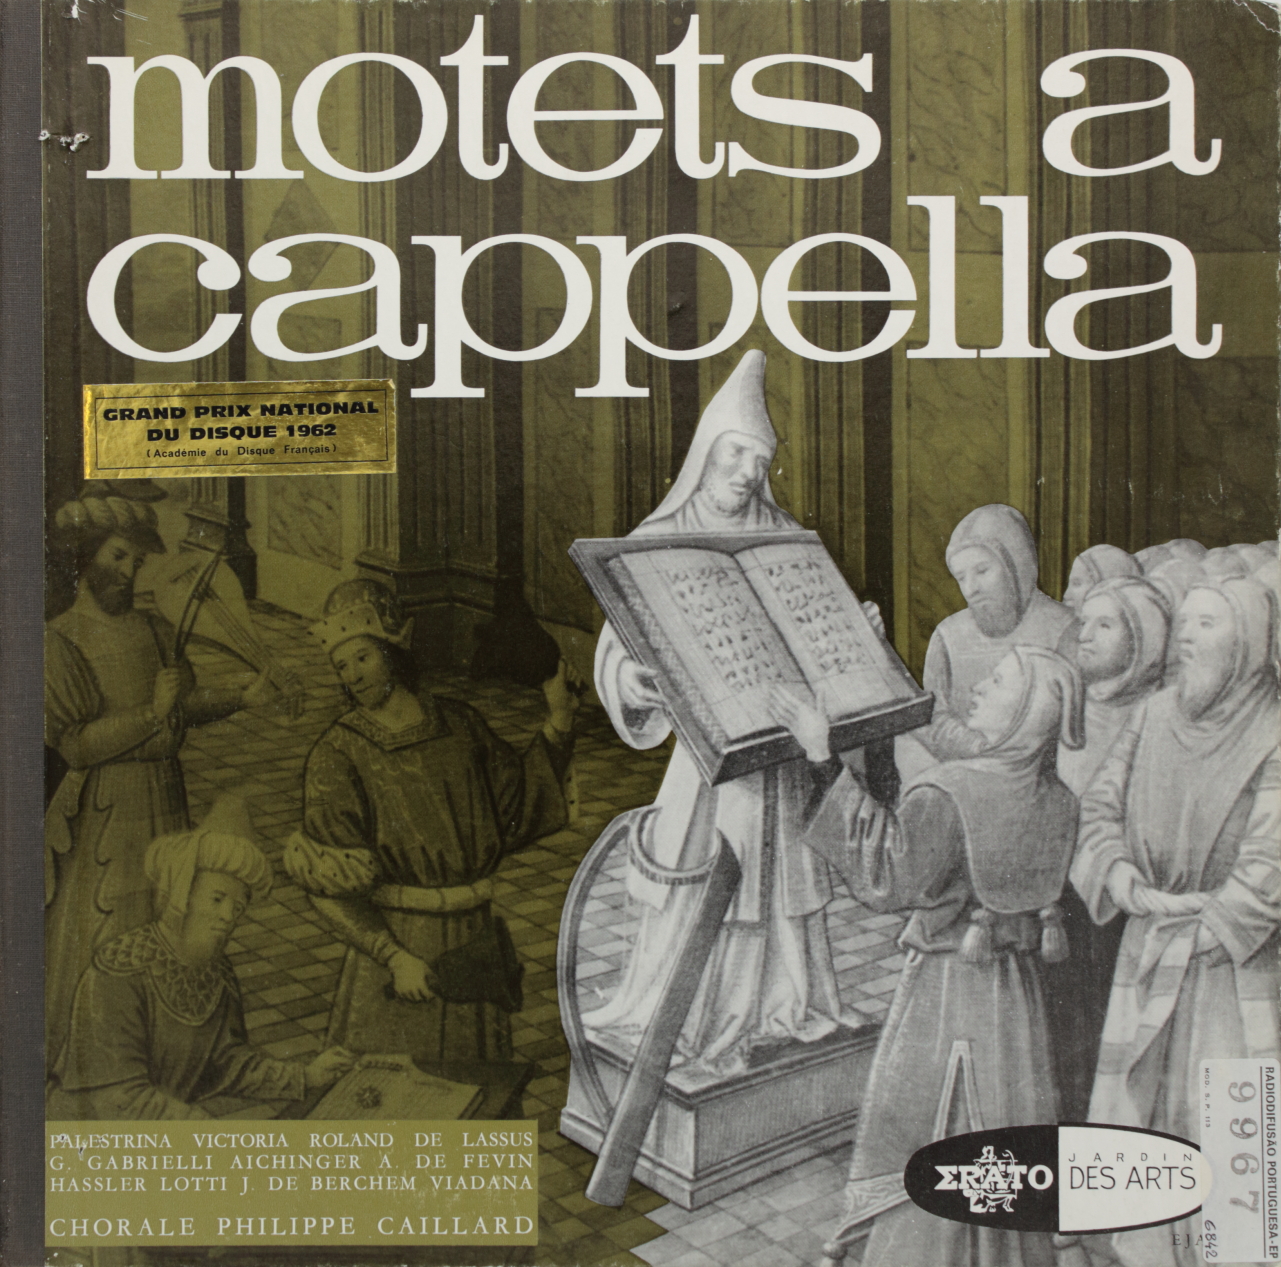 Motets a capella